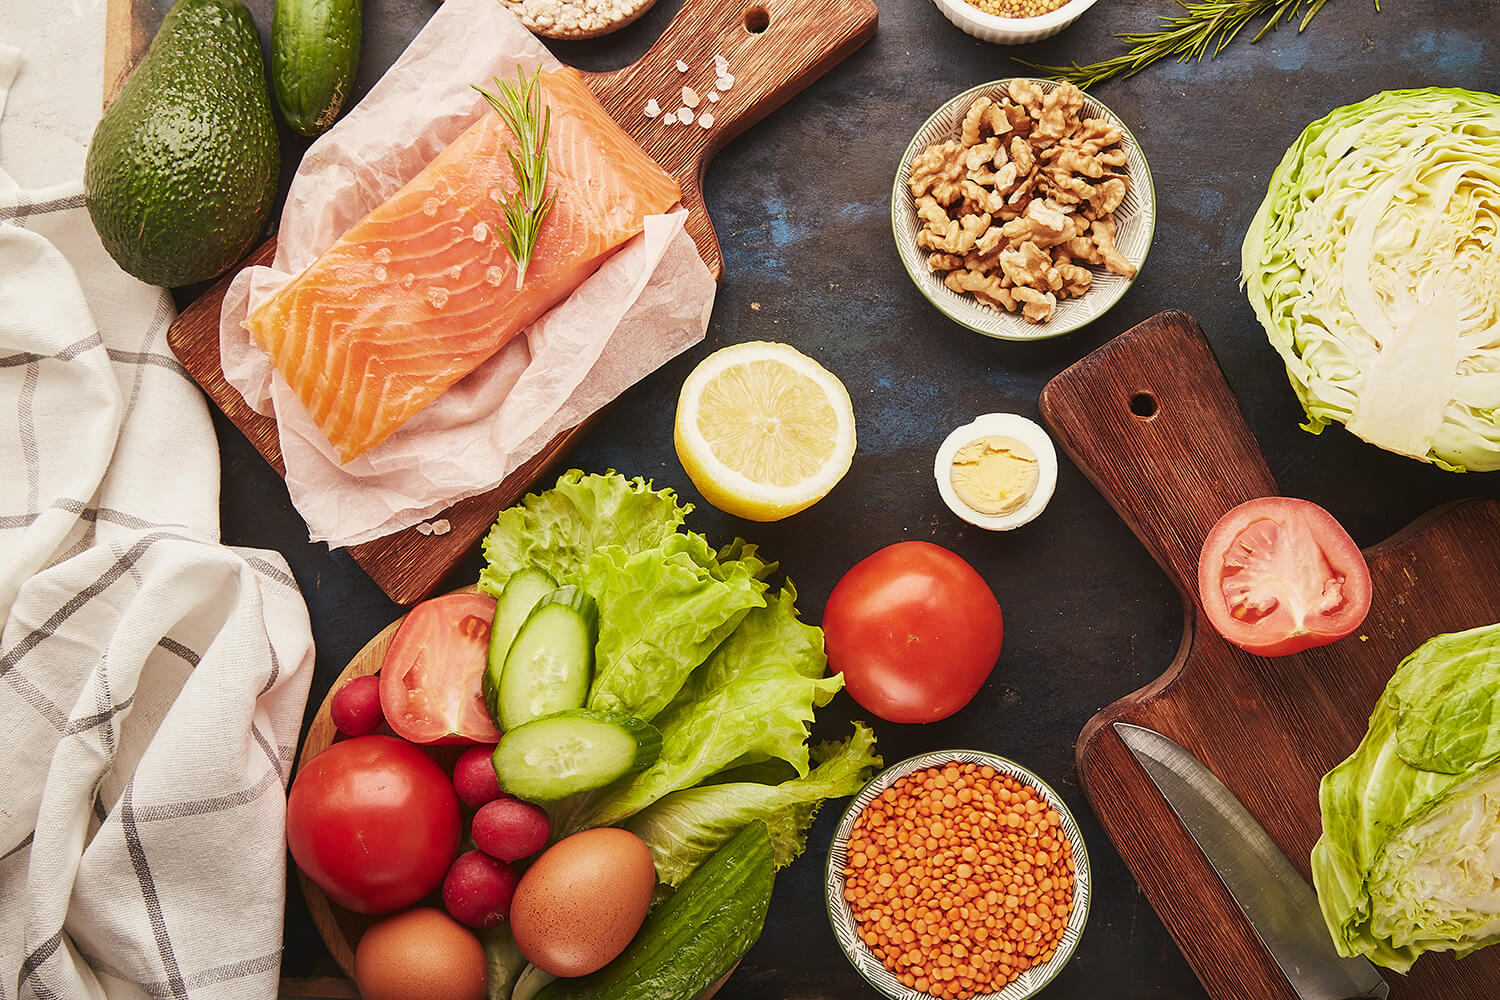 Glutenfreie Lebensmittel - Gemüse, Obst, Walnüsse, geräucherter Lachs, Gemüse, Avocado - auf dunkler Tischplatte